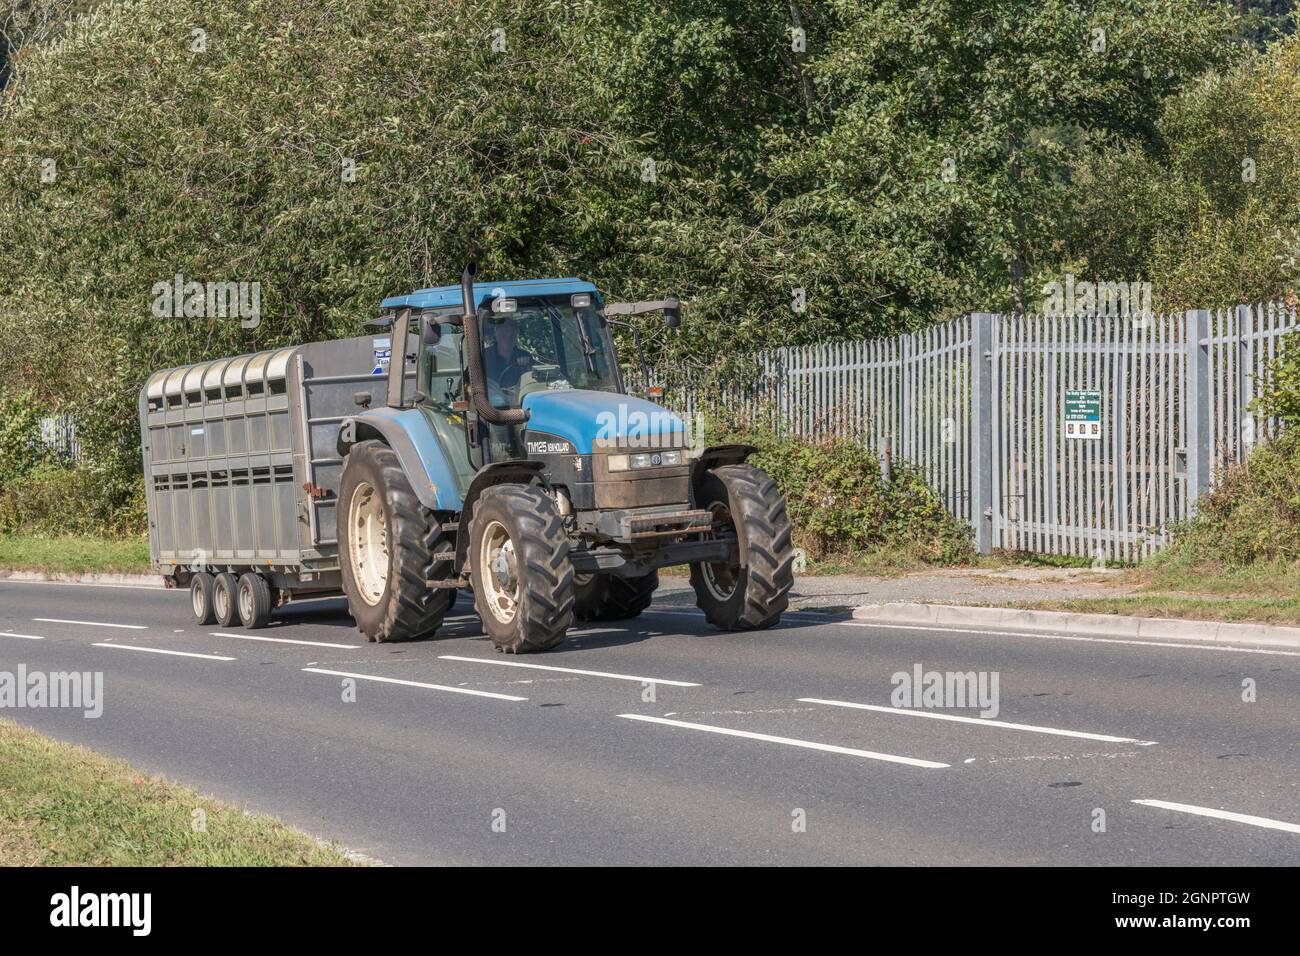 Traktor mit anhänger auf der straße uk -Fotos und -Bildmaterial in hoher  Auflösung – Alamy